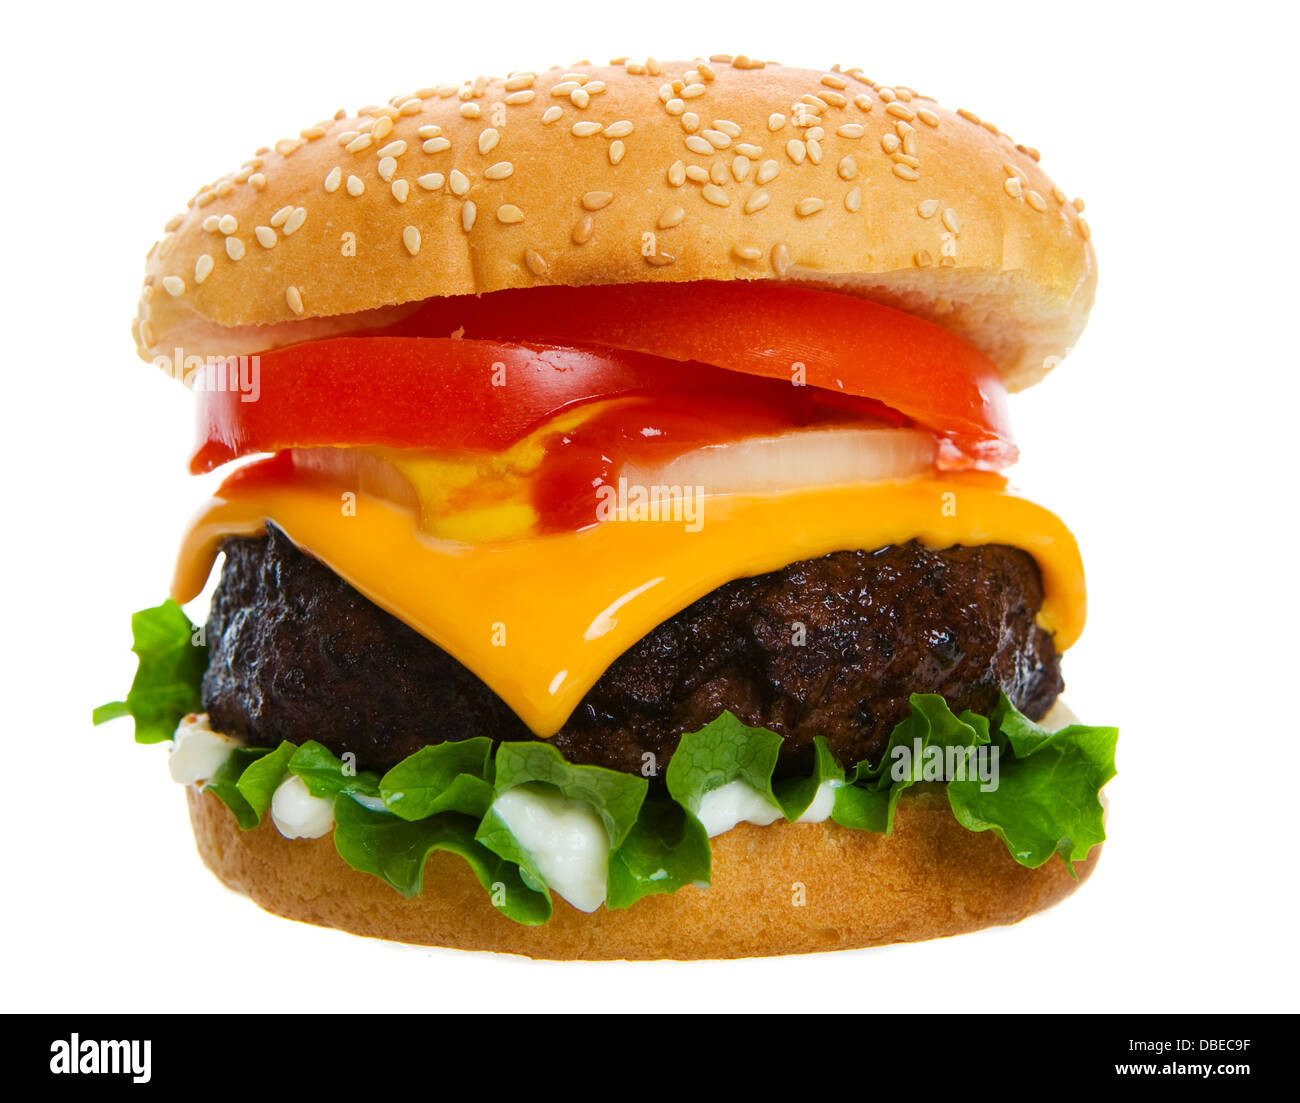 Groß und saftig Cheeseburger auf weißem Hintergrund Stockfoto